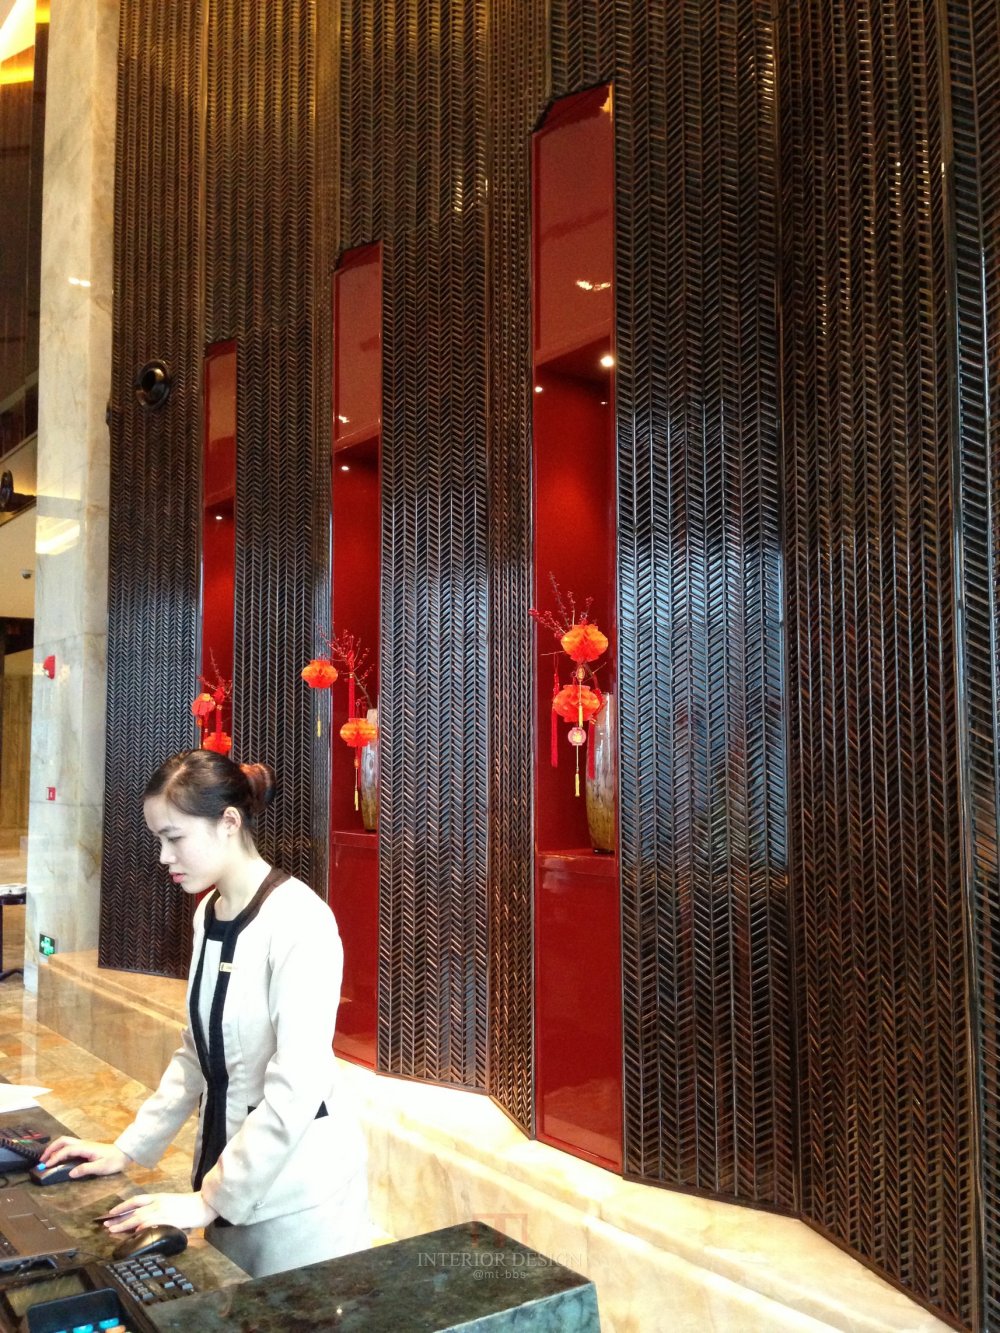 成都丽思卡尔顿酒店The Ritz-Carlton Chengdu(欢迎更新,高分奖励)_IMG_6368.JPG